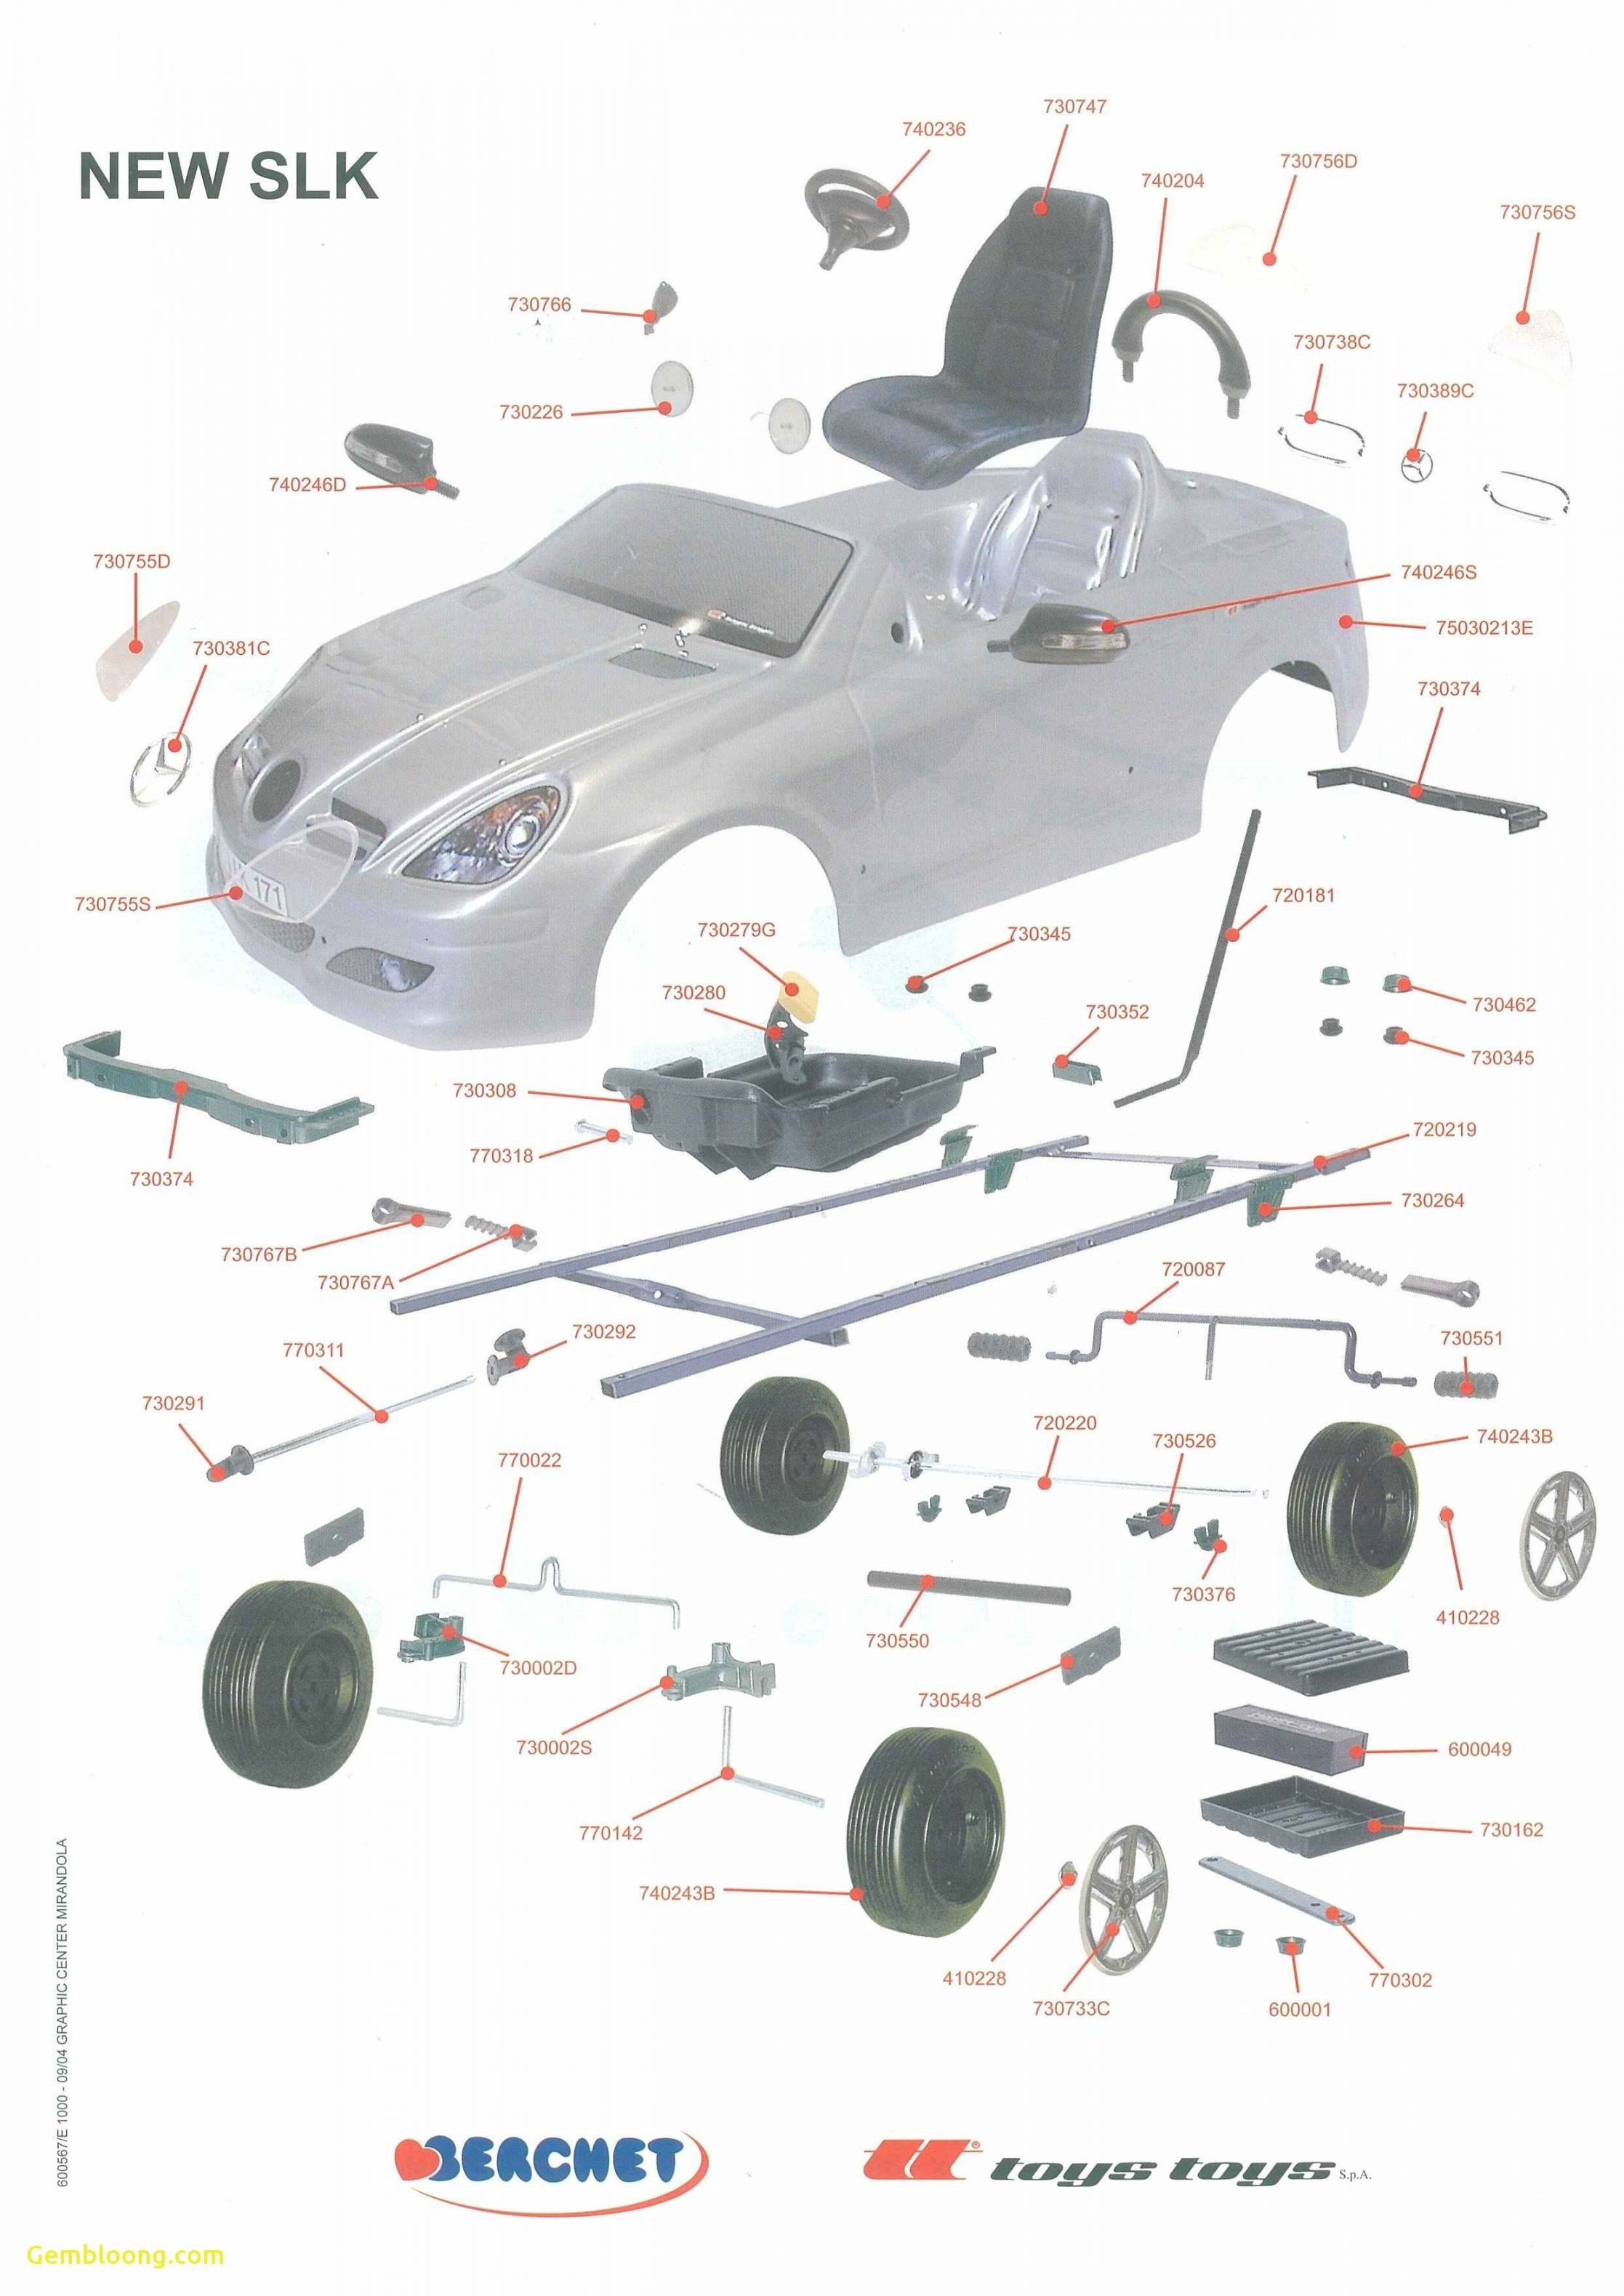 Diagram Of Car Parts Exterior Car Body Parts Names Diagram Of Diagram Of Car Parts Exterior